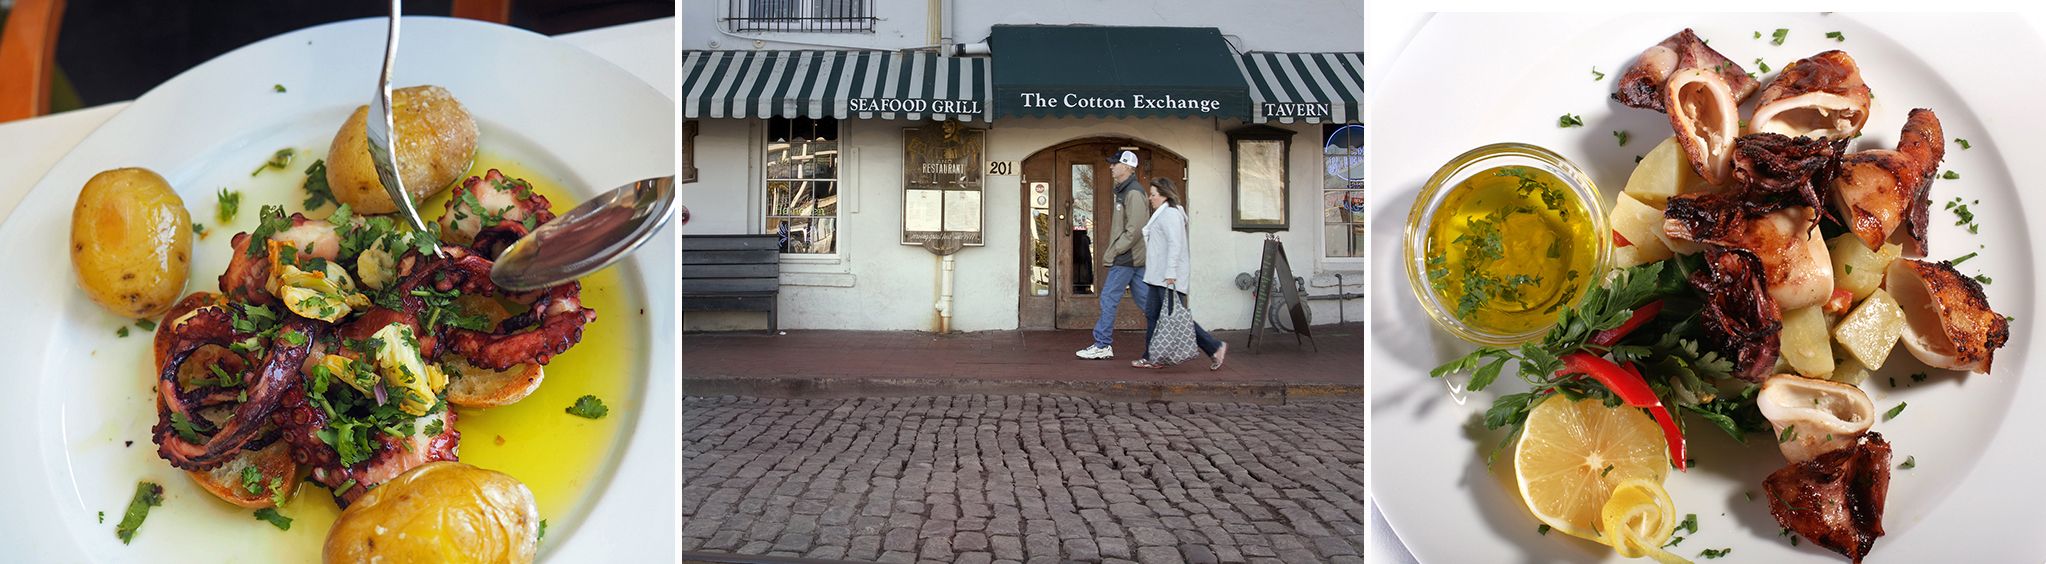 Cotton Exchange Tavern & Restaurant